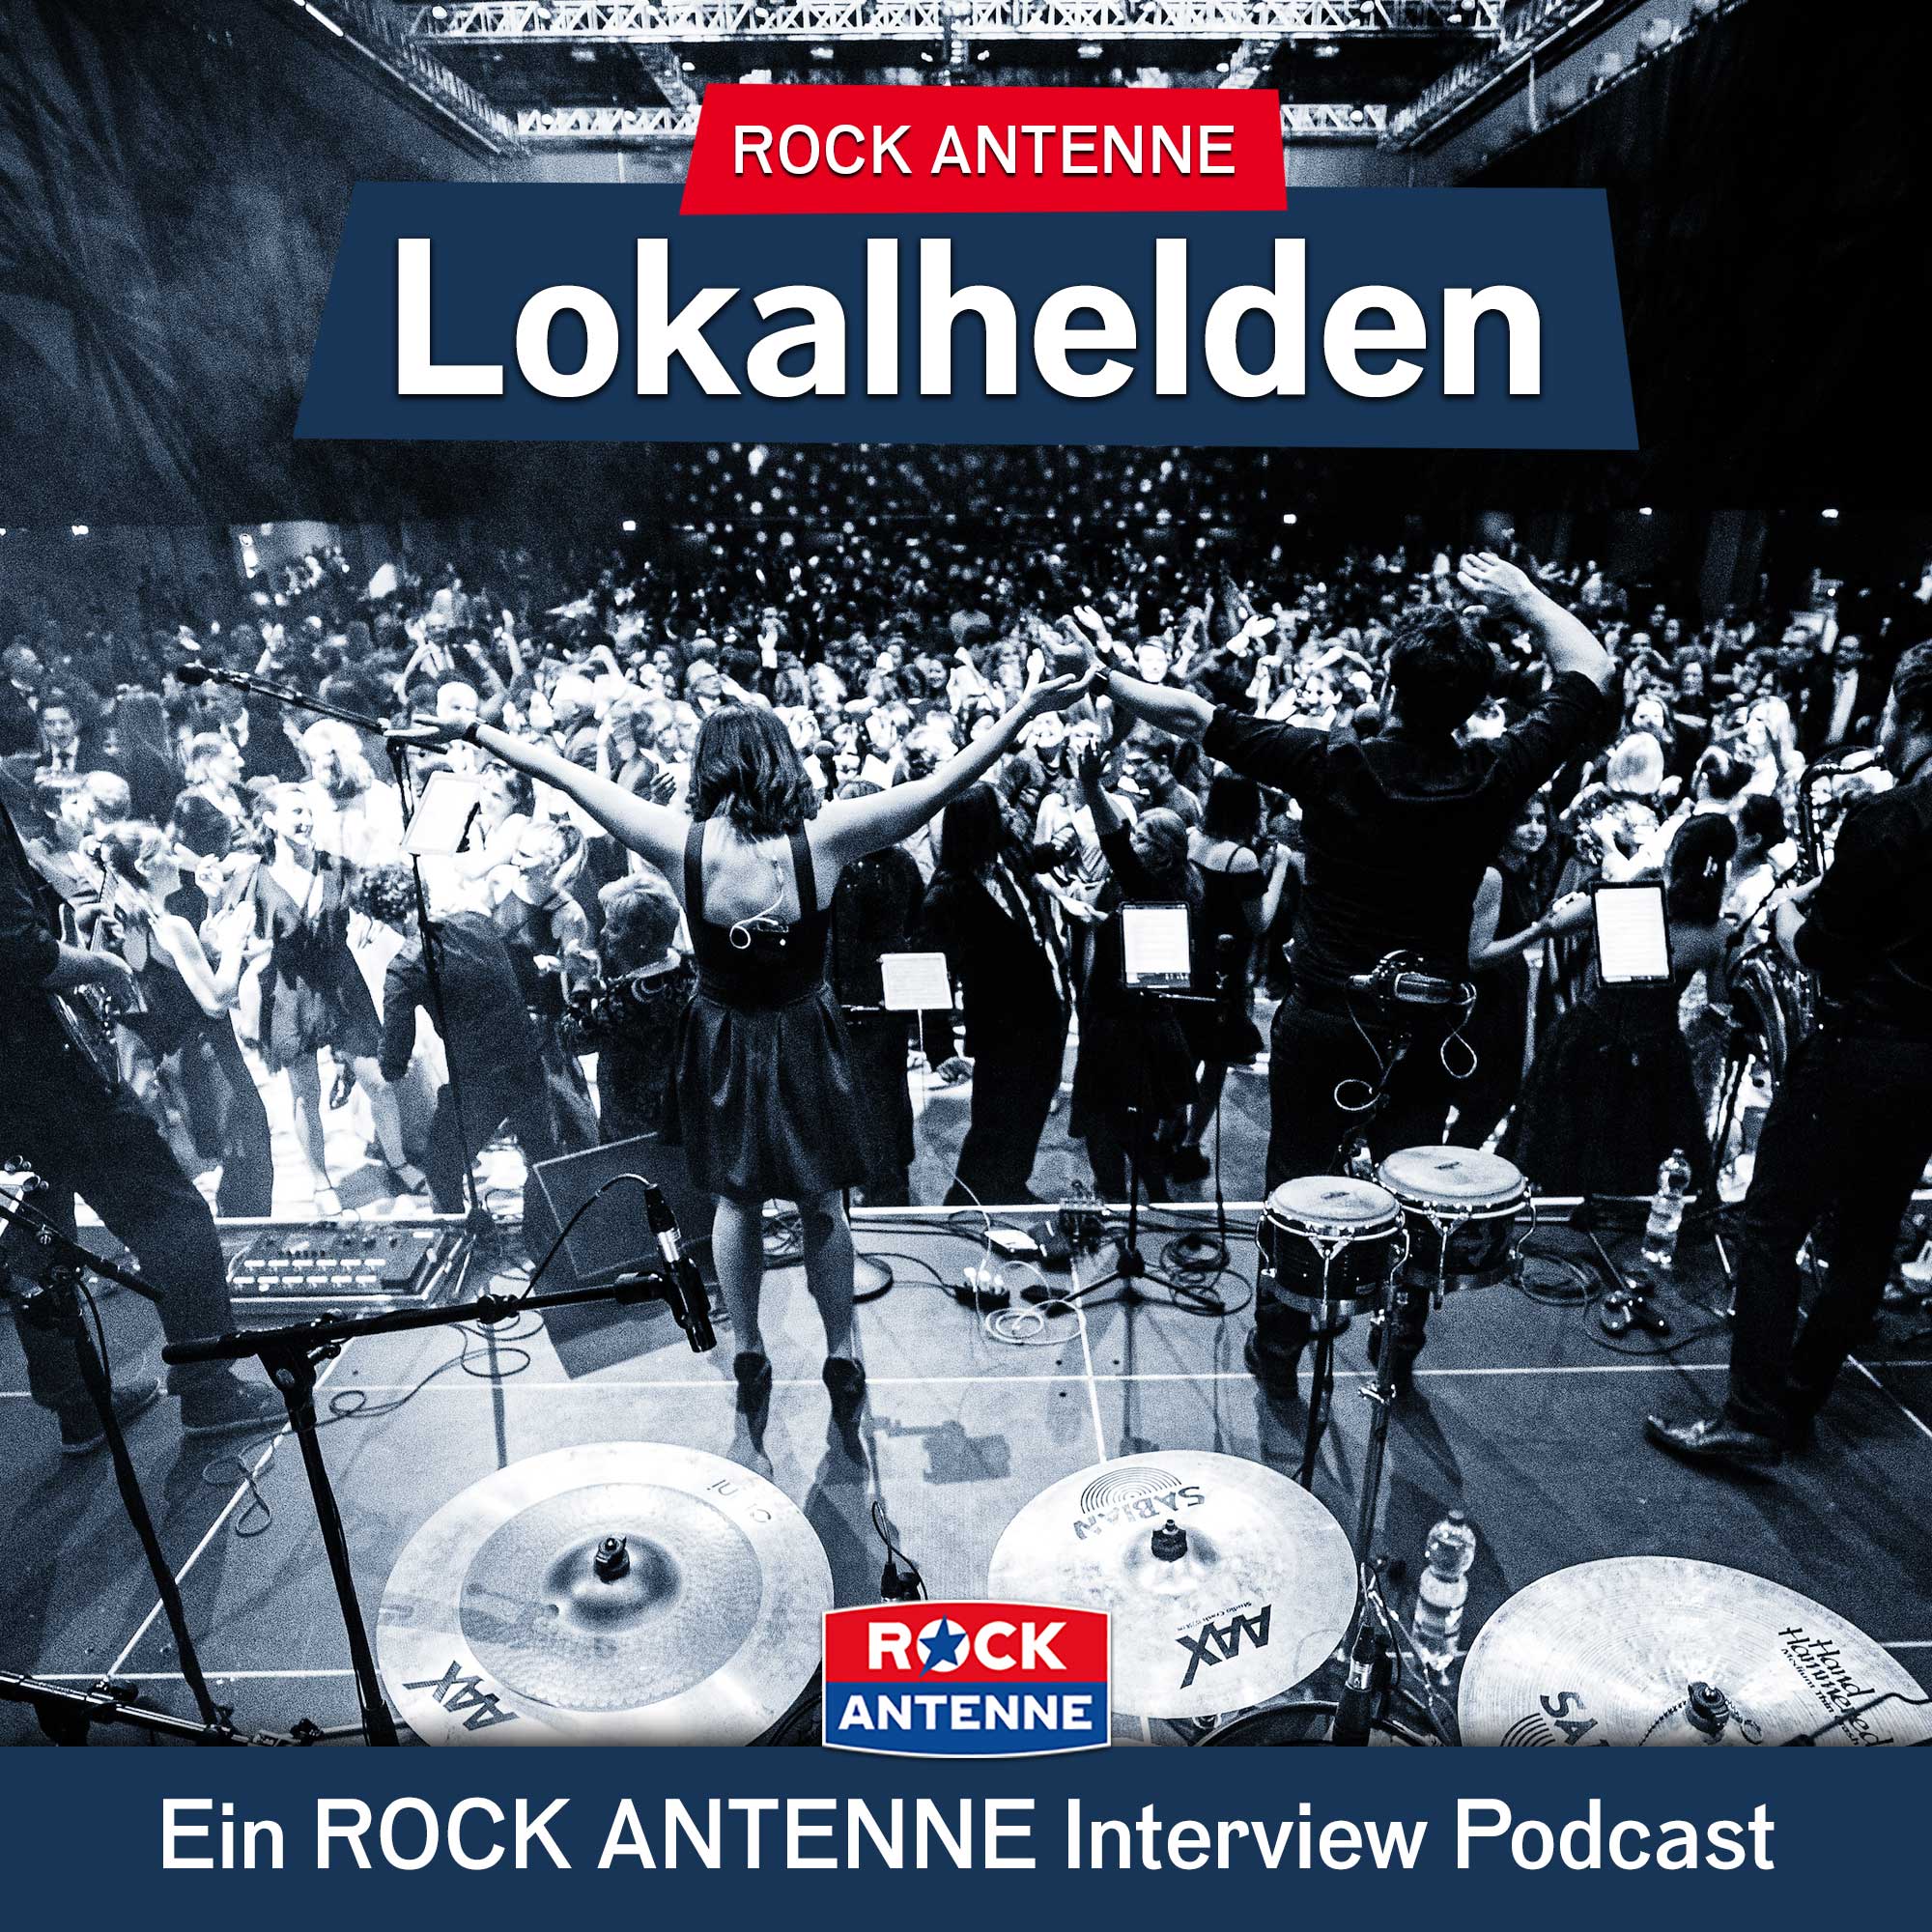 ROCK ANTENNE Lokalhelden der Interview Podcast!